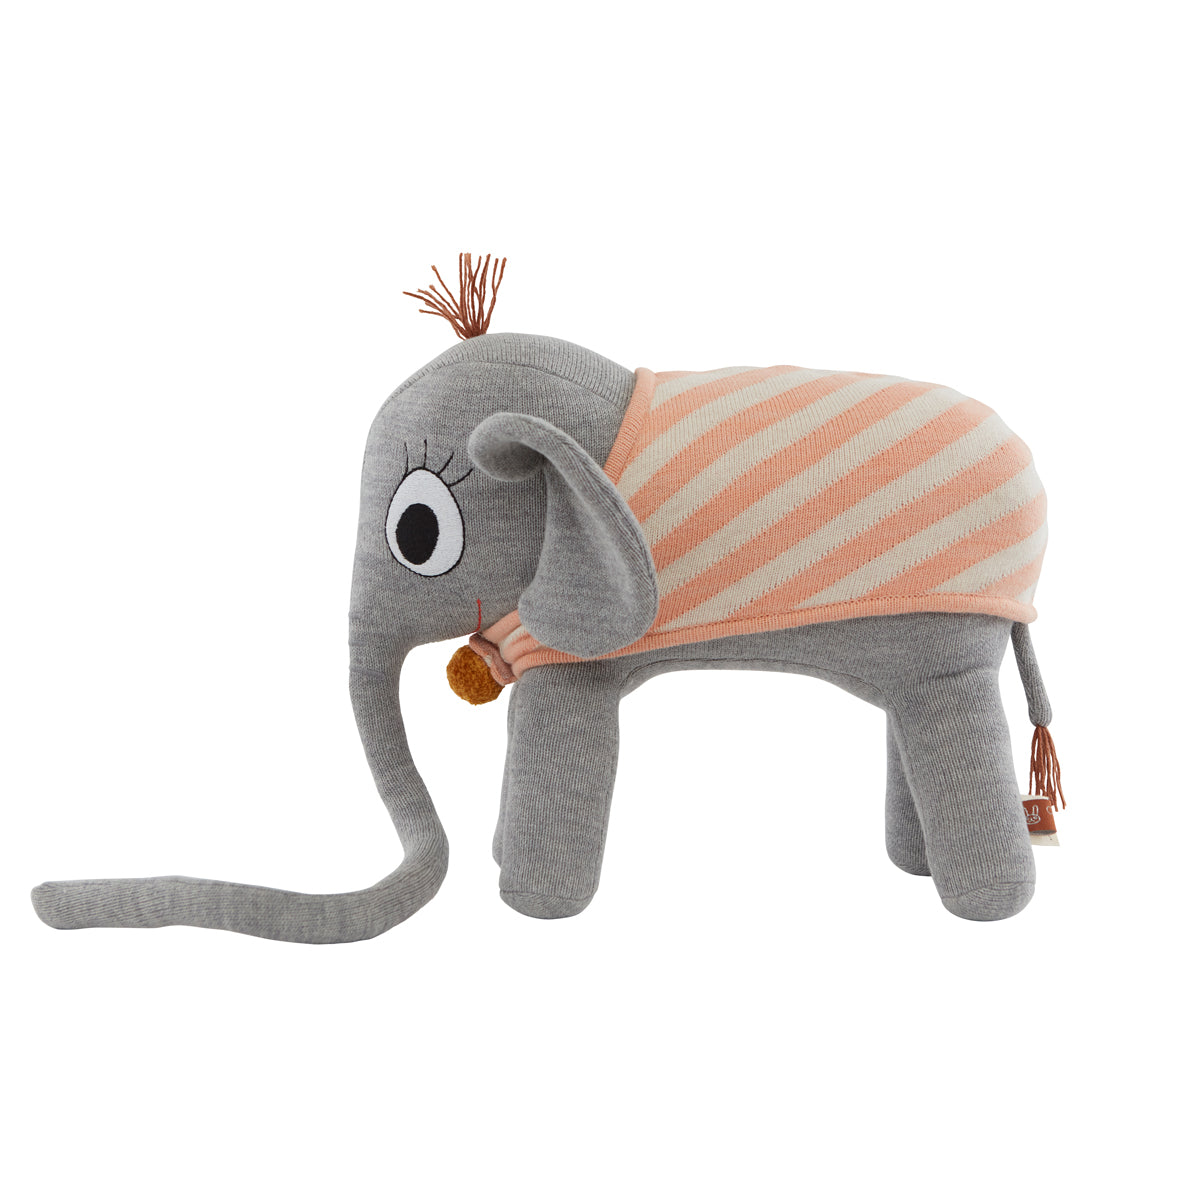 Ramboline Elephant Grey